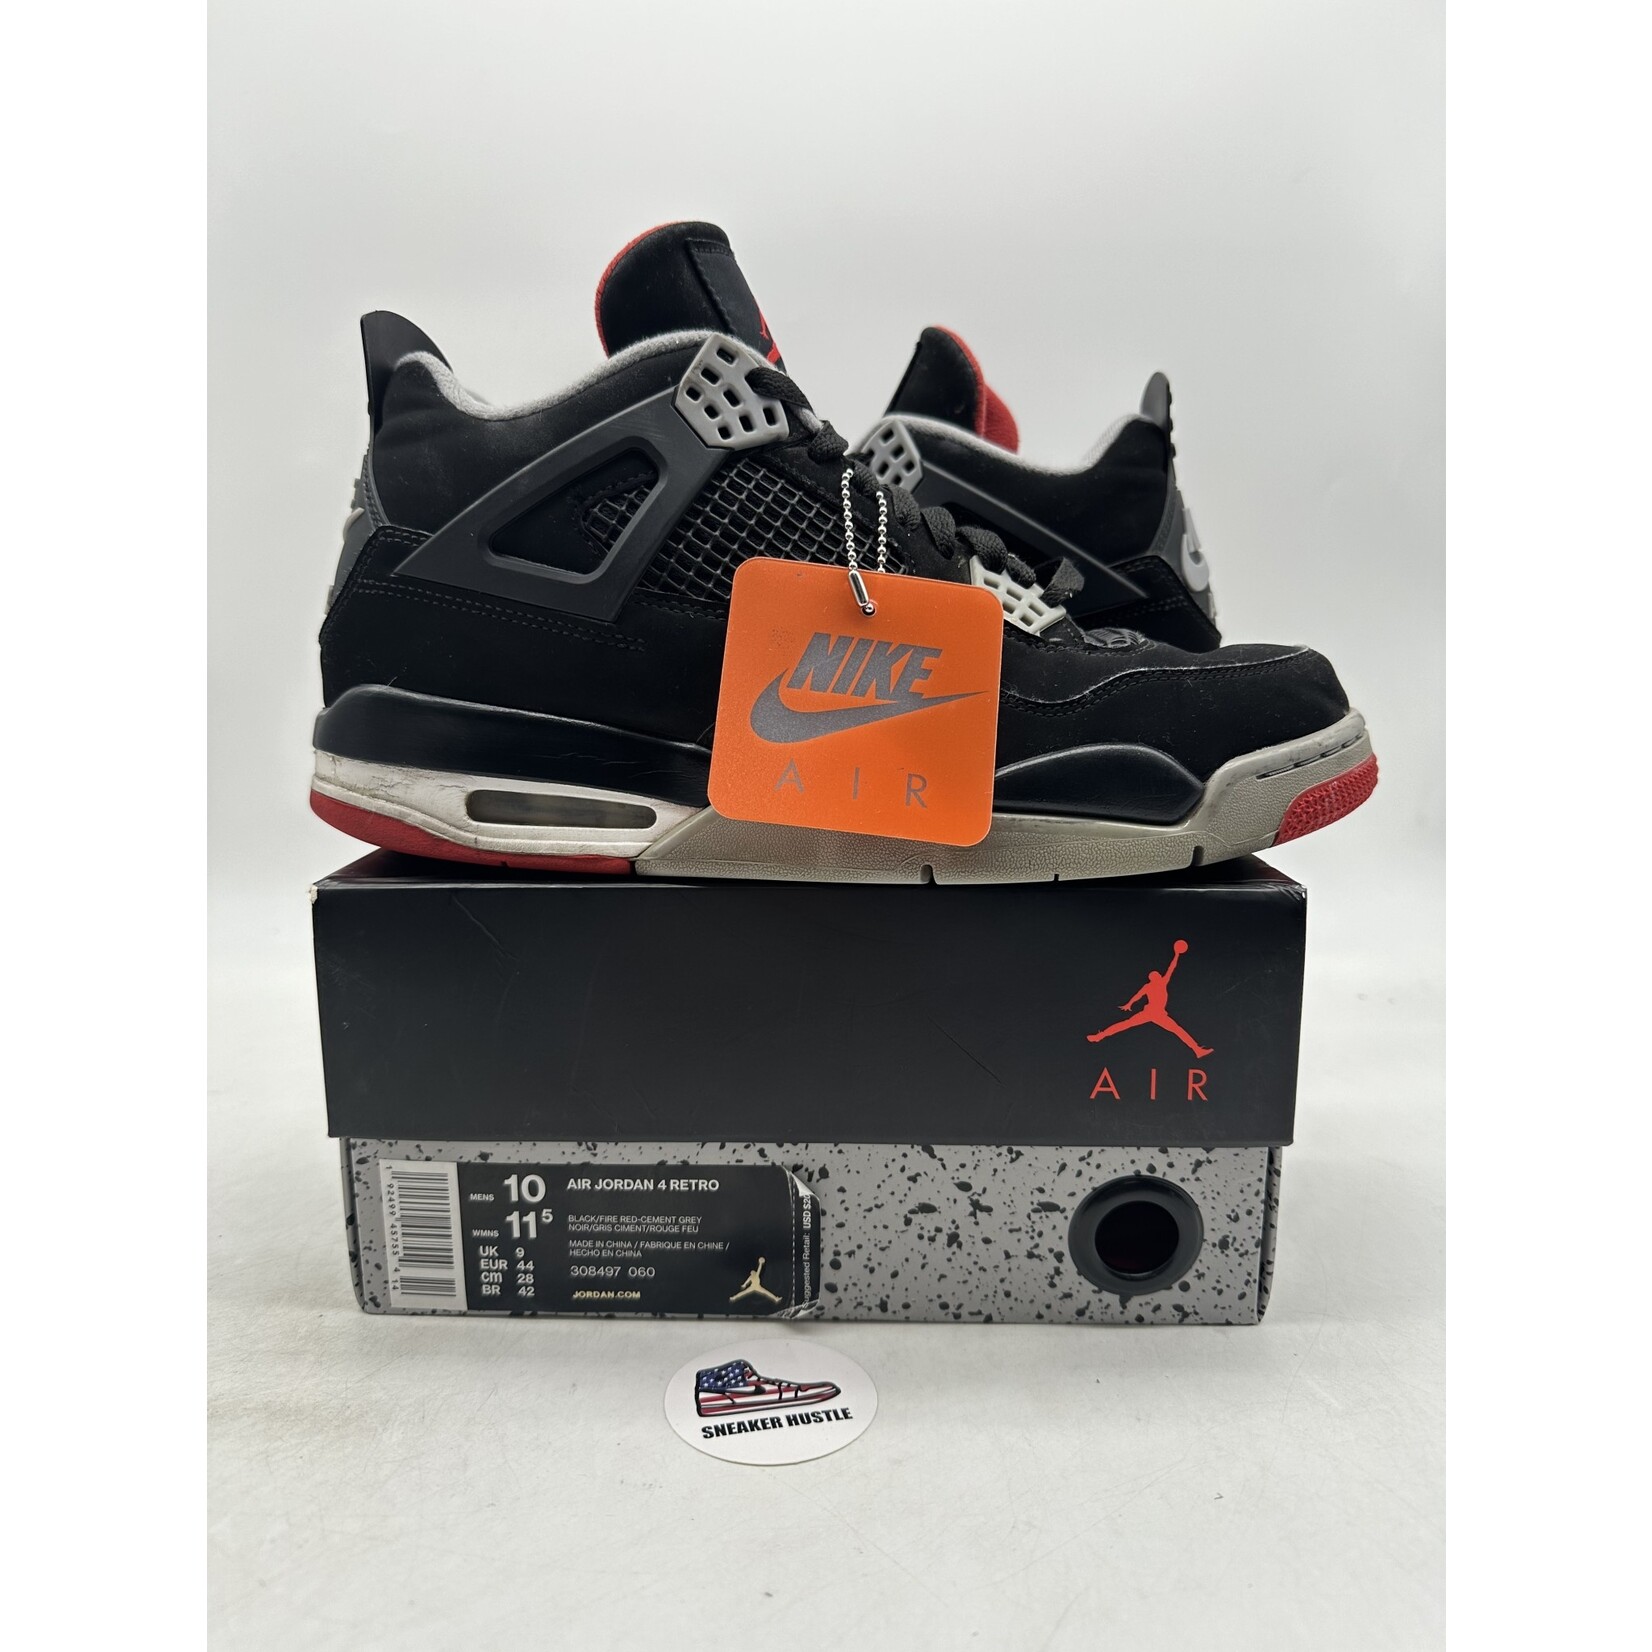 Air Jordan Jordan 4 Retro Bred (2019)